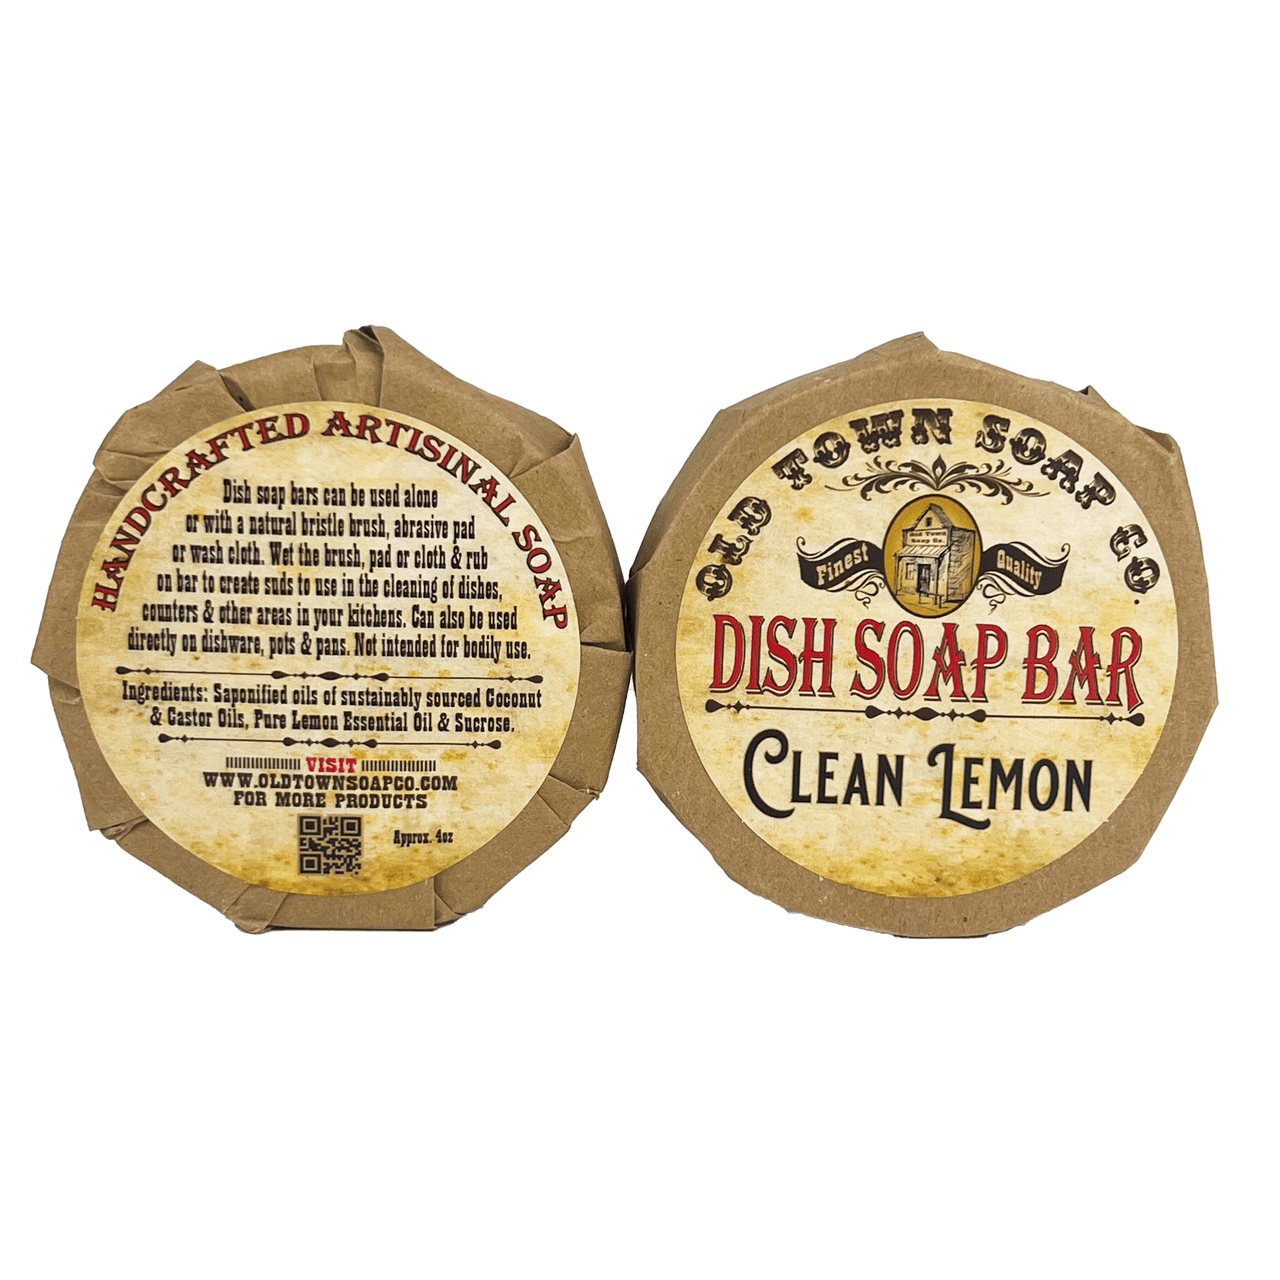 Clean Lemon -Dish Soap Bar - Old Town Soap Co.